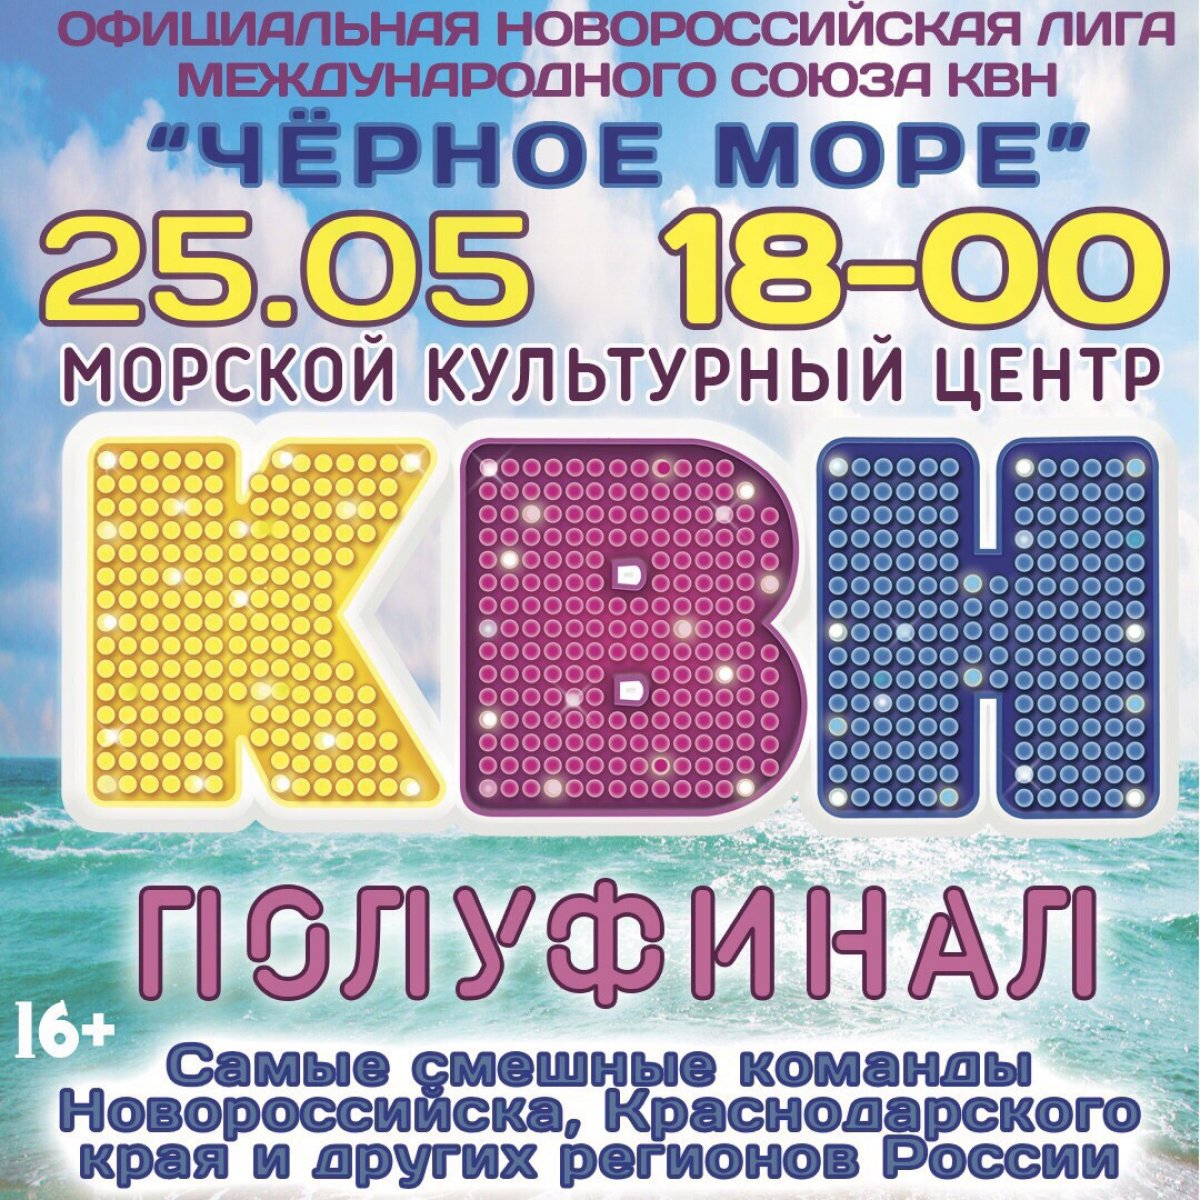 25 мая в 18.00 в Морском Культурном Центре пройдёт полуфинал Официальной Региональной Лиги КВН «Чёрное море», в котором примет участие наша Сборная университета, а также ребята из ТК и МК!